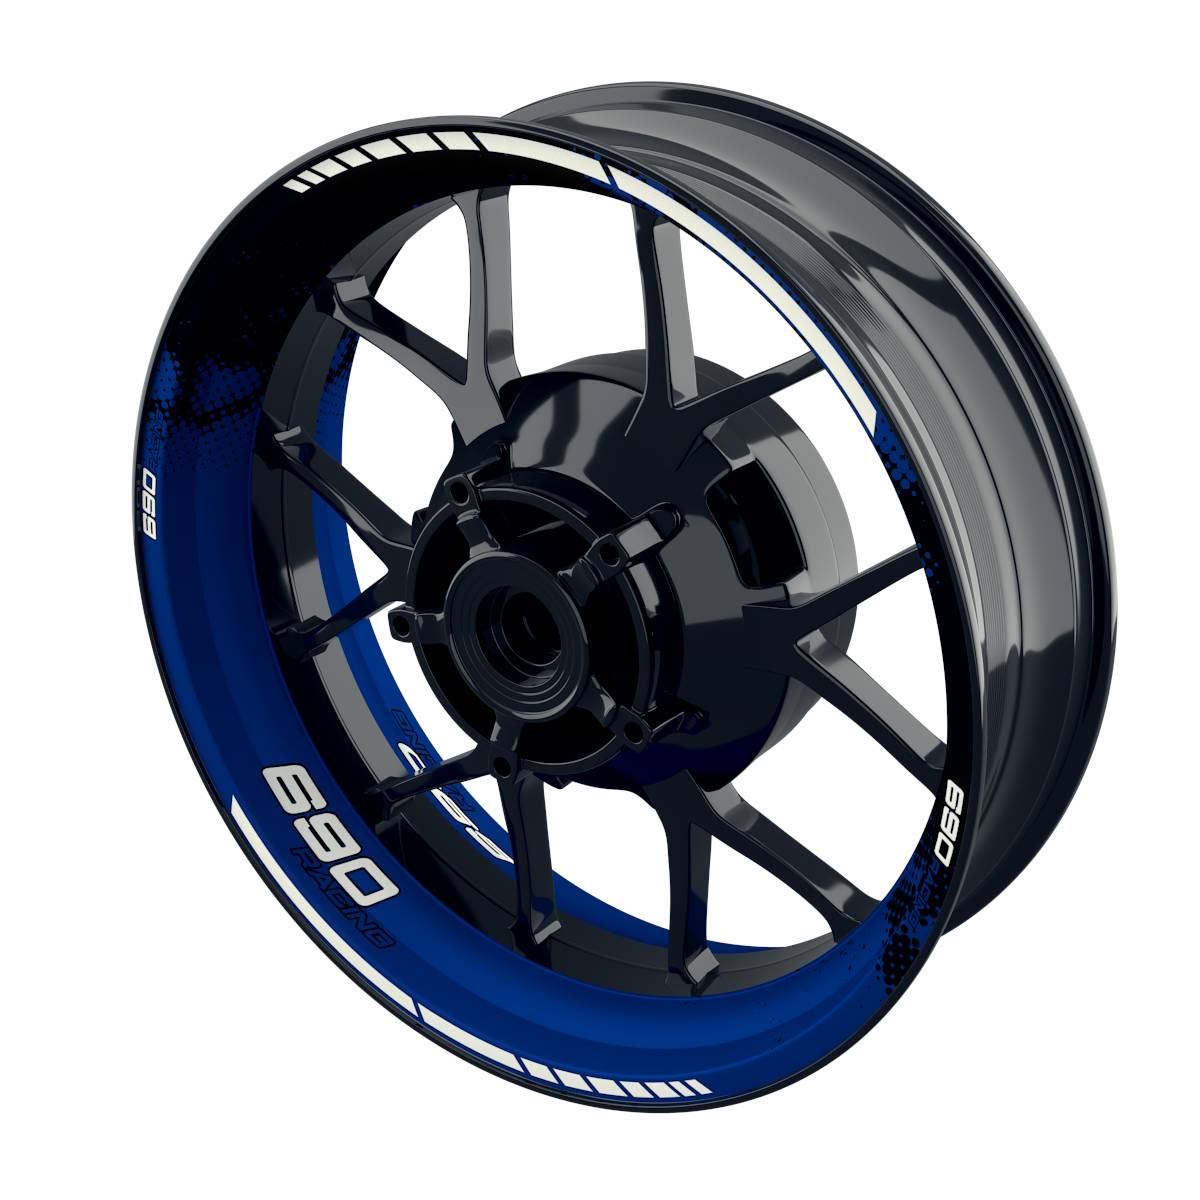 690 Racing Rim Decals DOTS Wheelsticker Premium